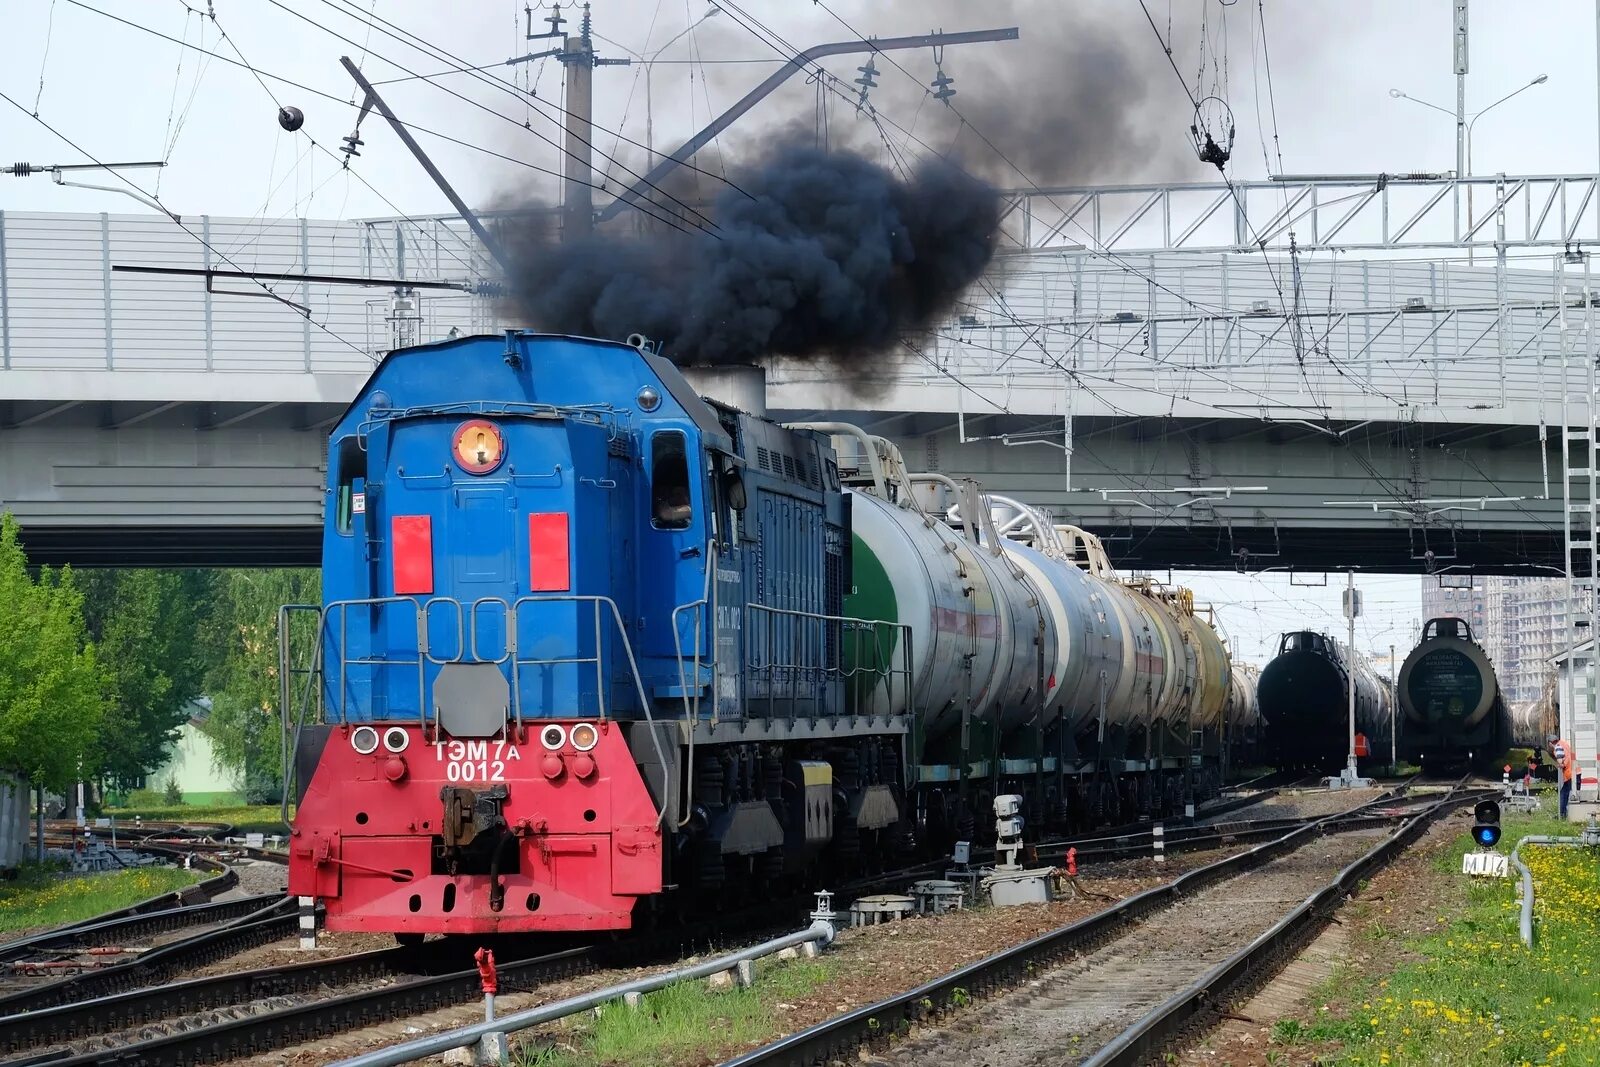 Тэм7а Яничкино. Тэм7 тепловоз. Промышленный Железнодорожный транспорт. Предприятие промышленного железнодорожного транспорта.